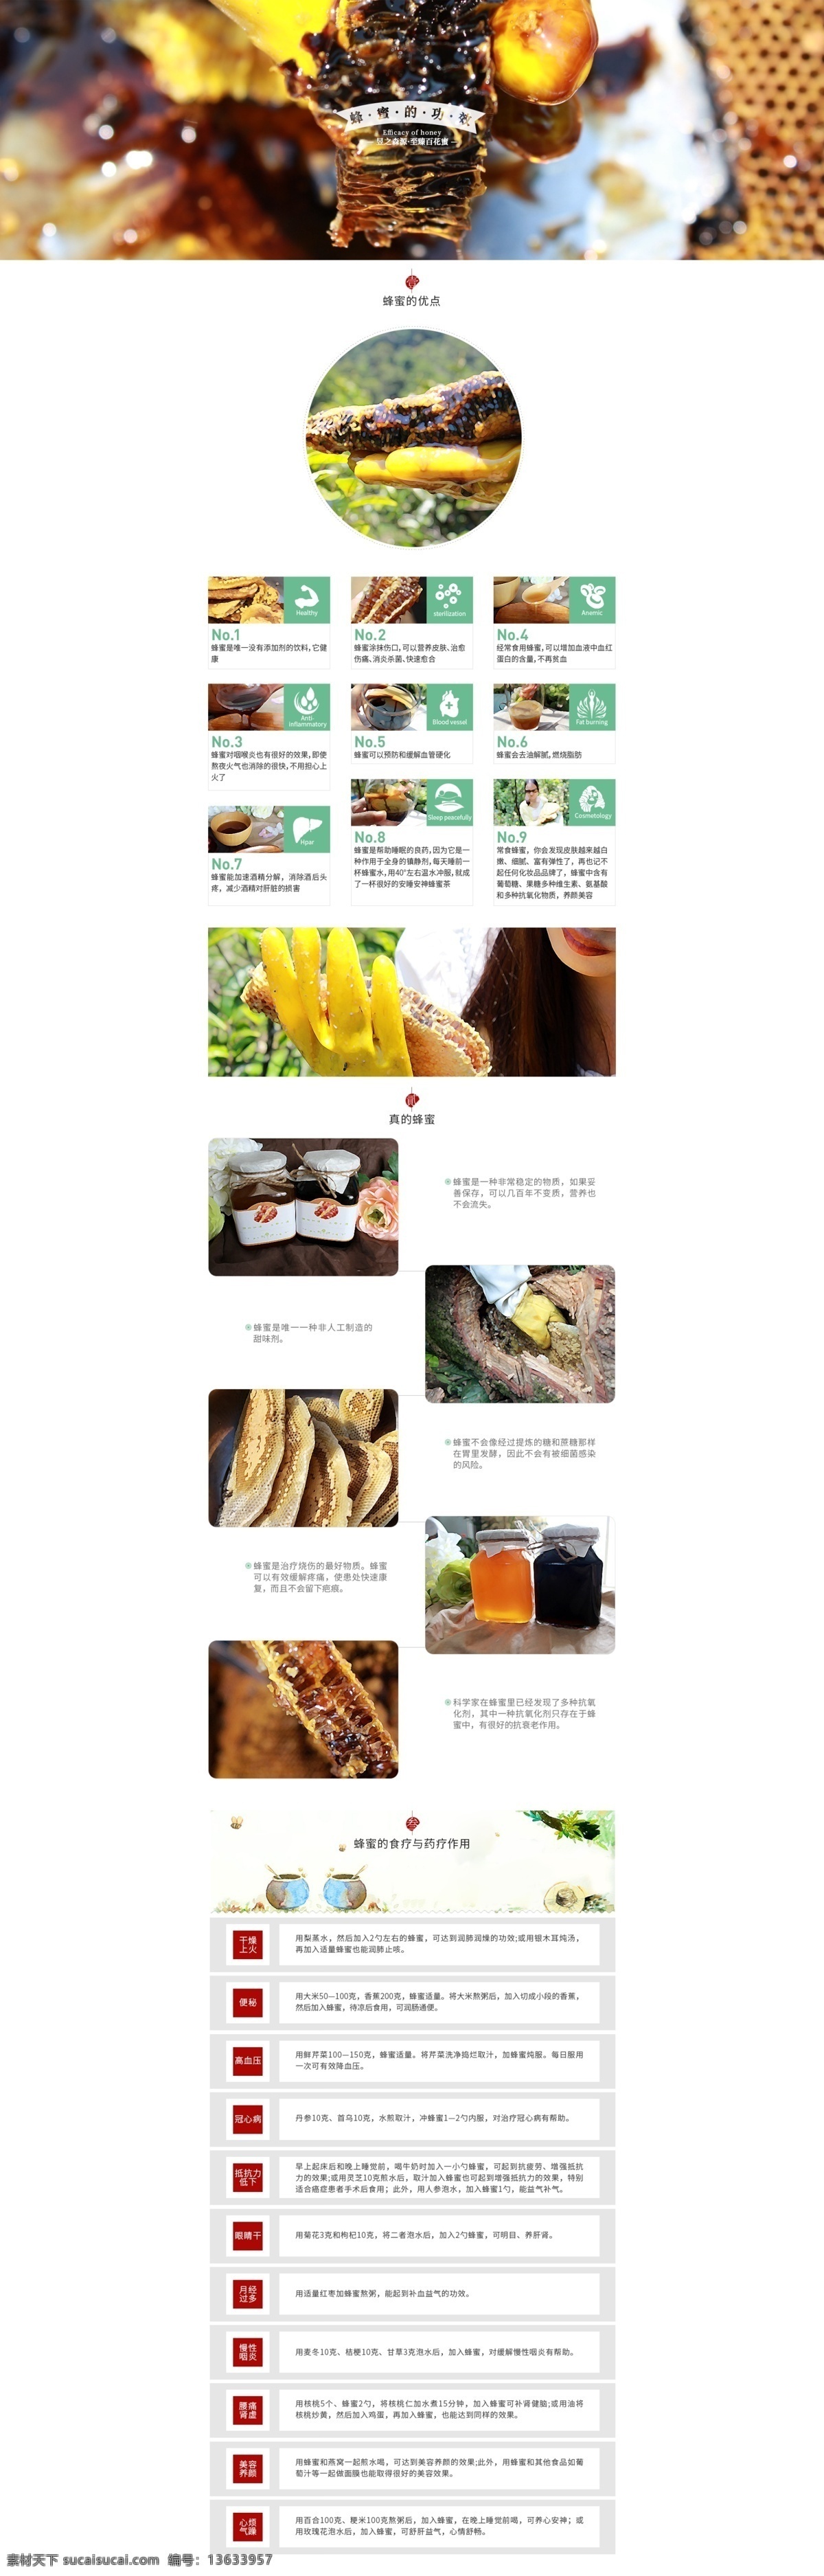 蜂蜜 功效 二级 页 淘宝 电商 首页 蜂蜜的功效 好处 二级页面 食疗 蜂蜜介绍